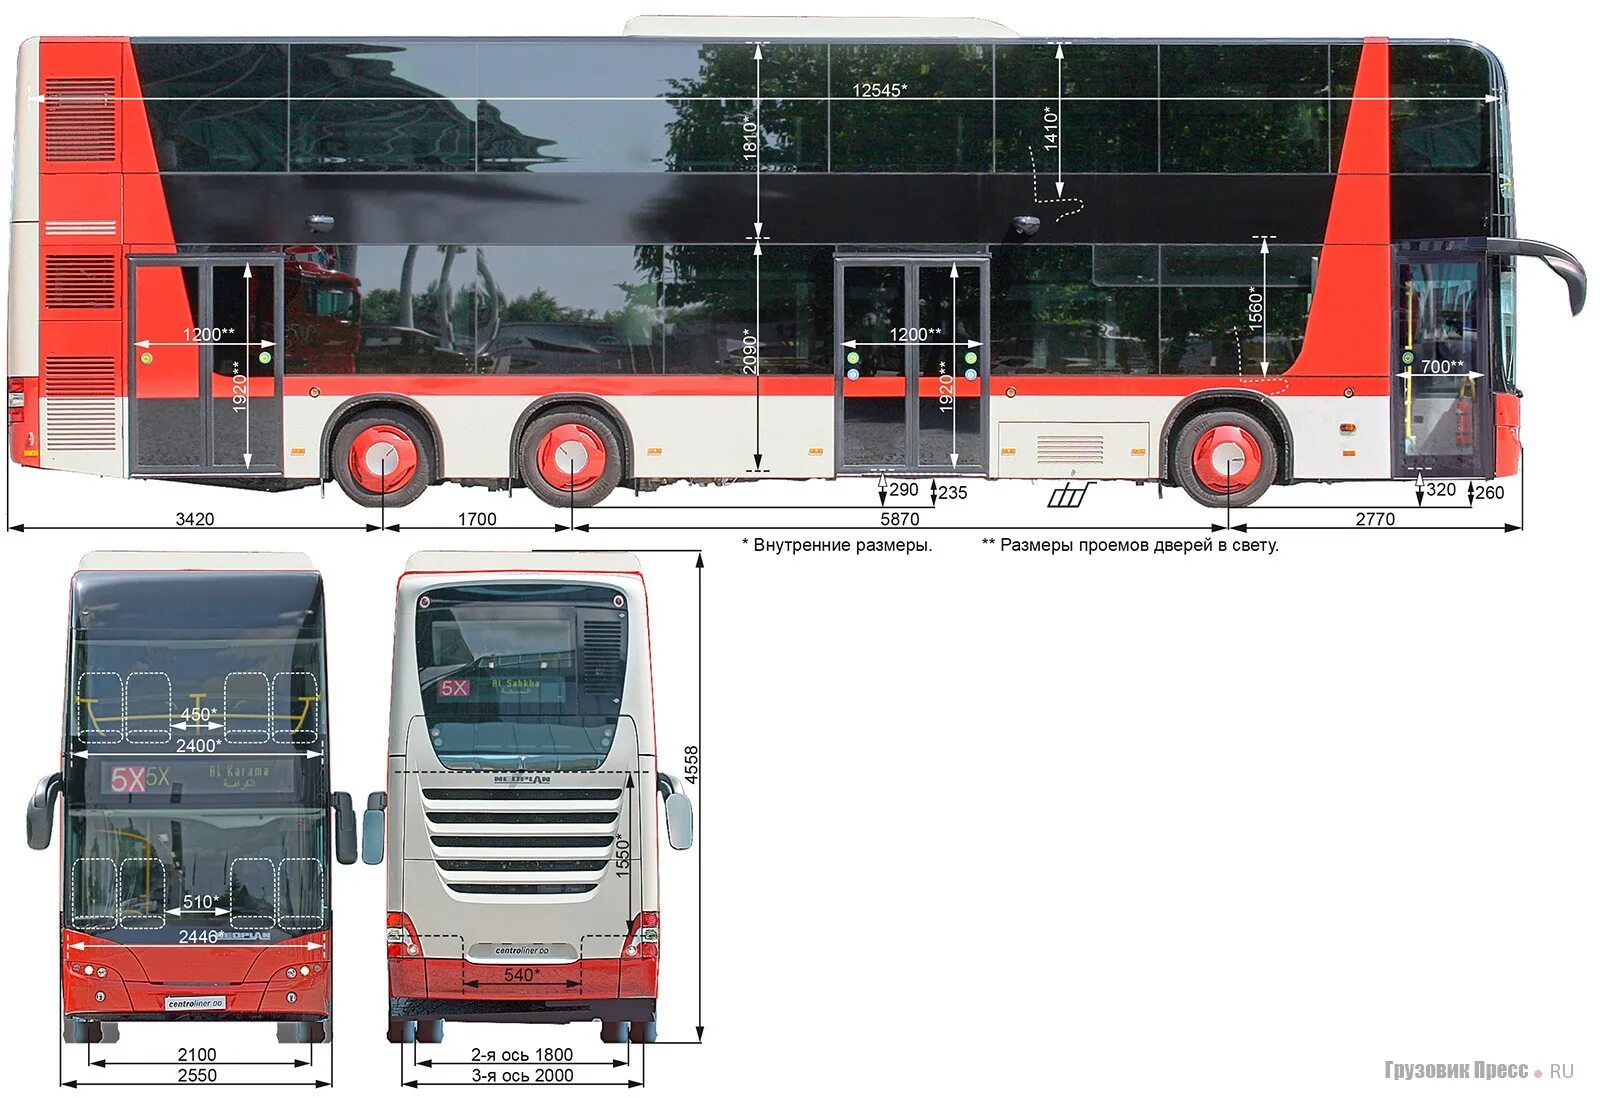 Какая длина автобуса. Автобус Неоплан габариты. Высота автобуса Неоплан. Длина автобуса Неоплан. Neoplan автобус высота.